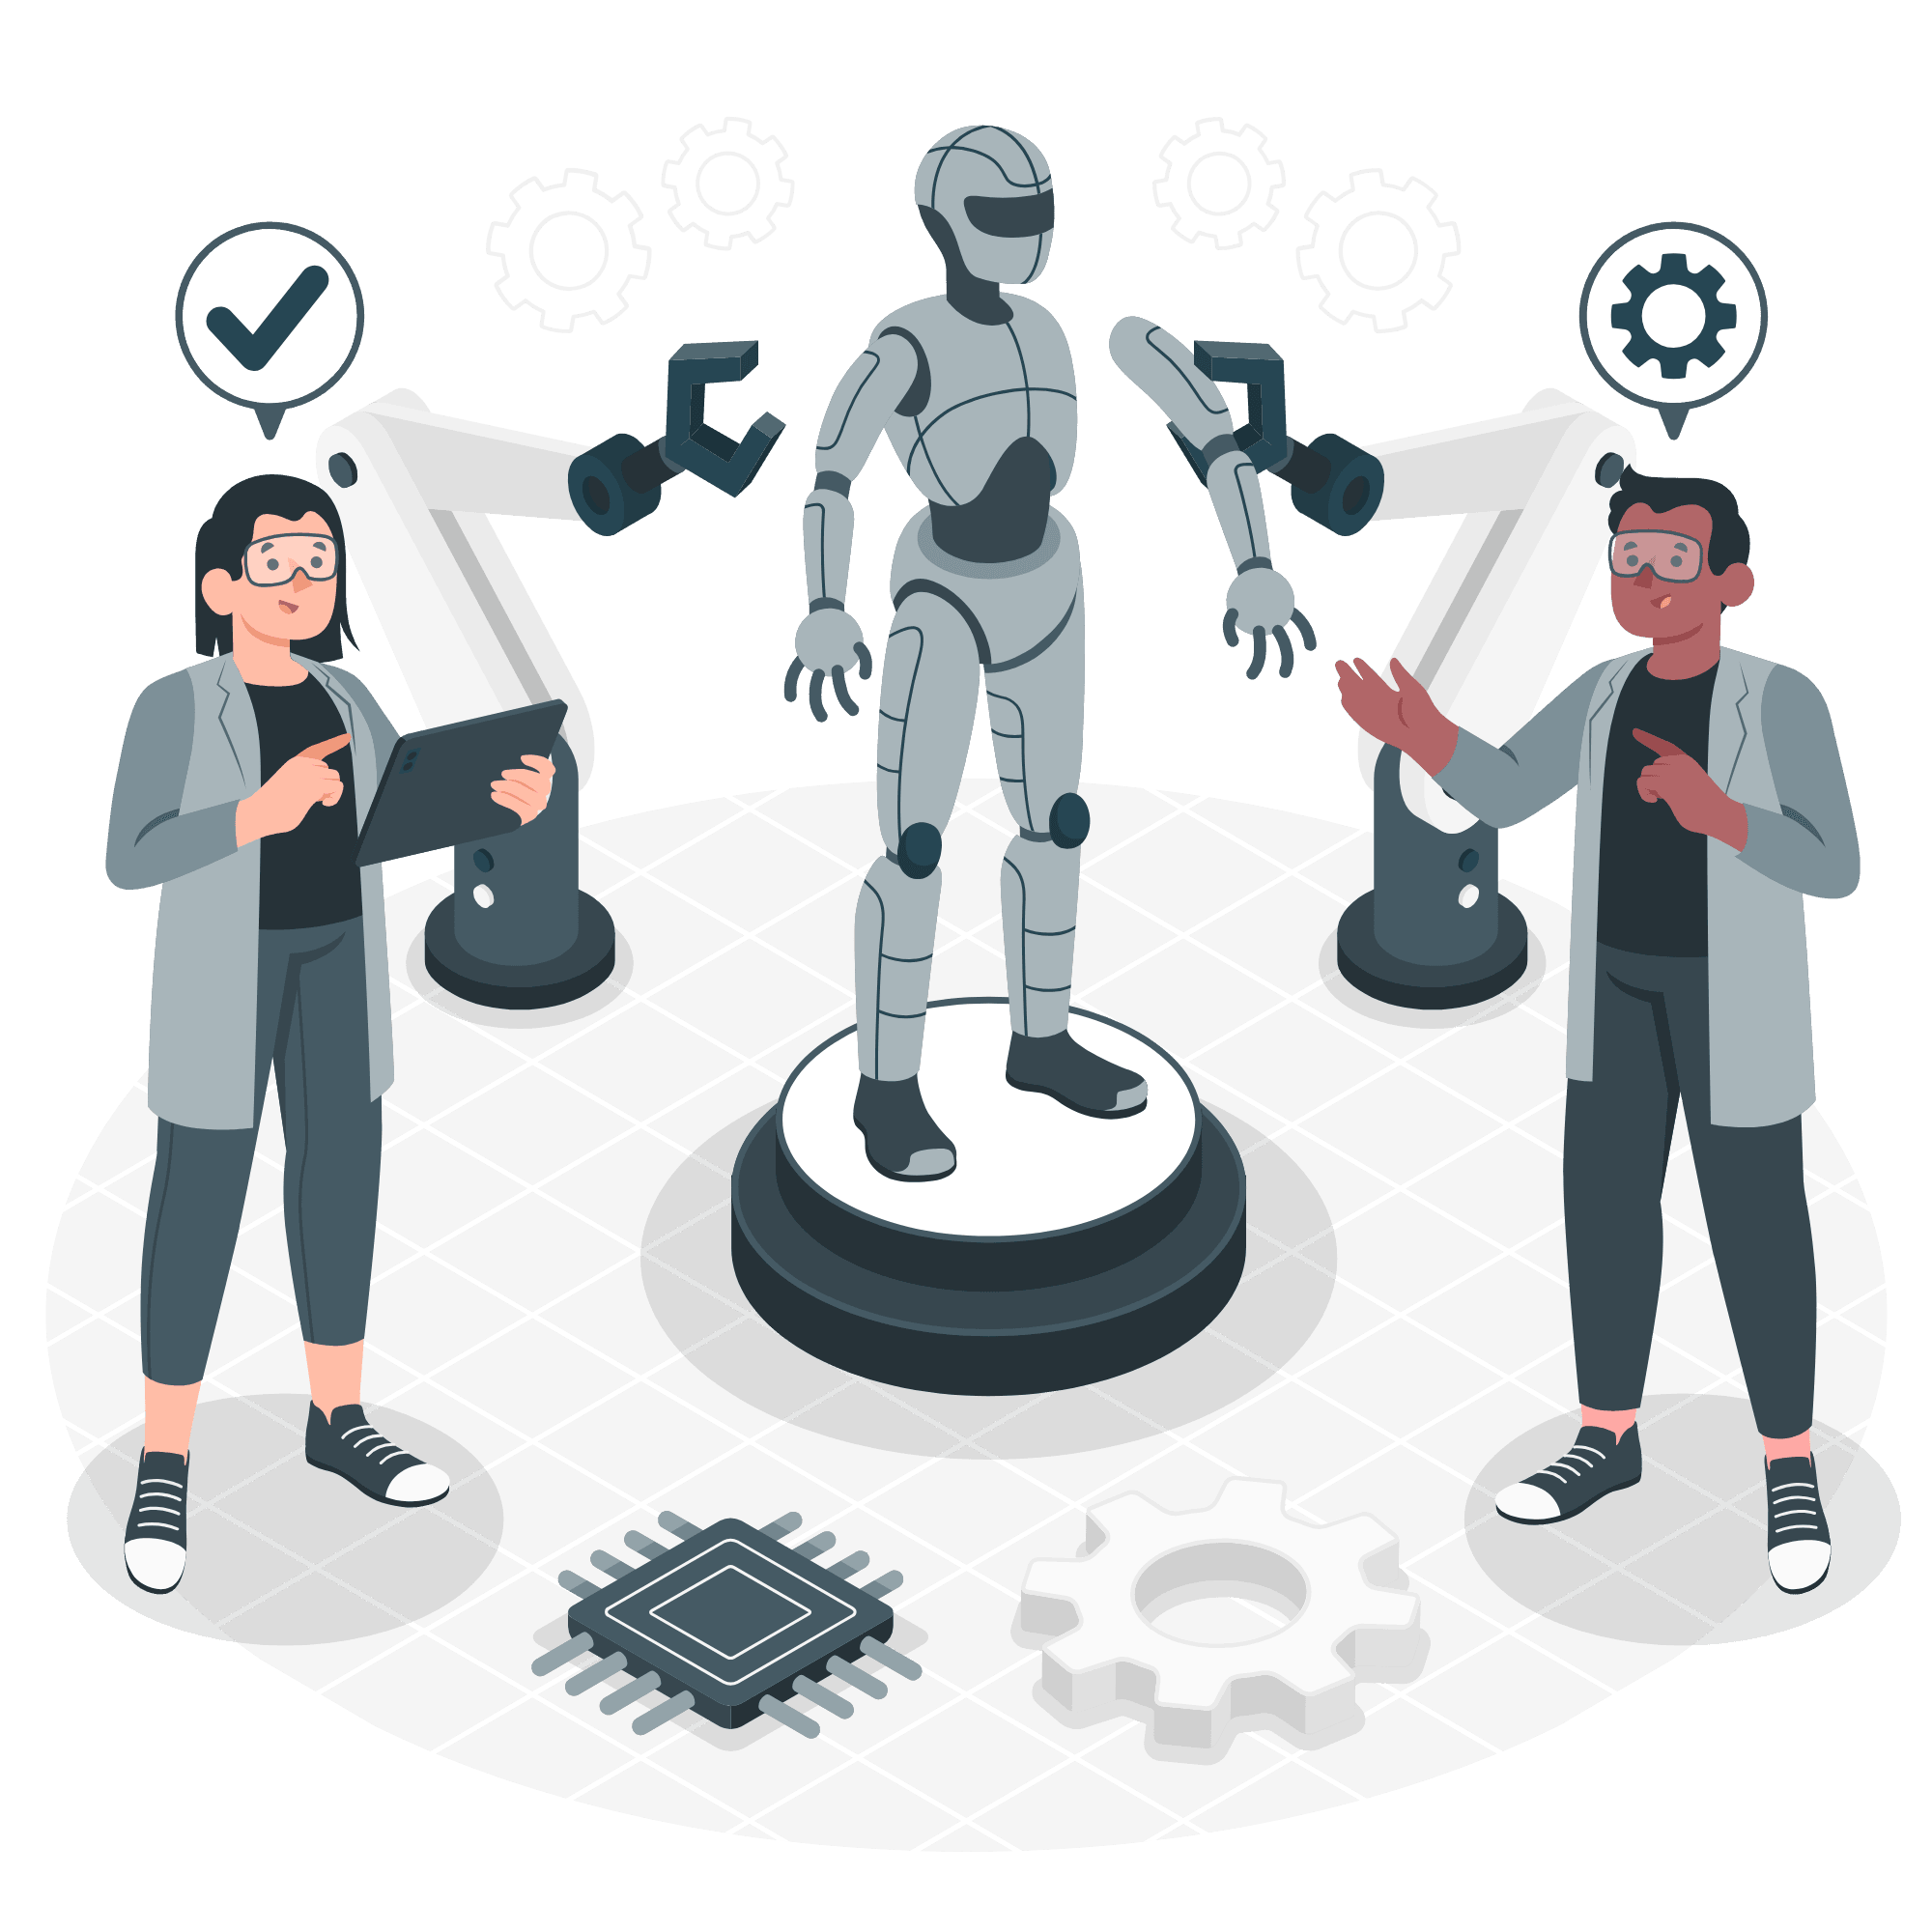  Améliorer la productivité grâce à l'IA et à la collaboration humaine